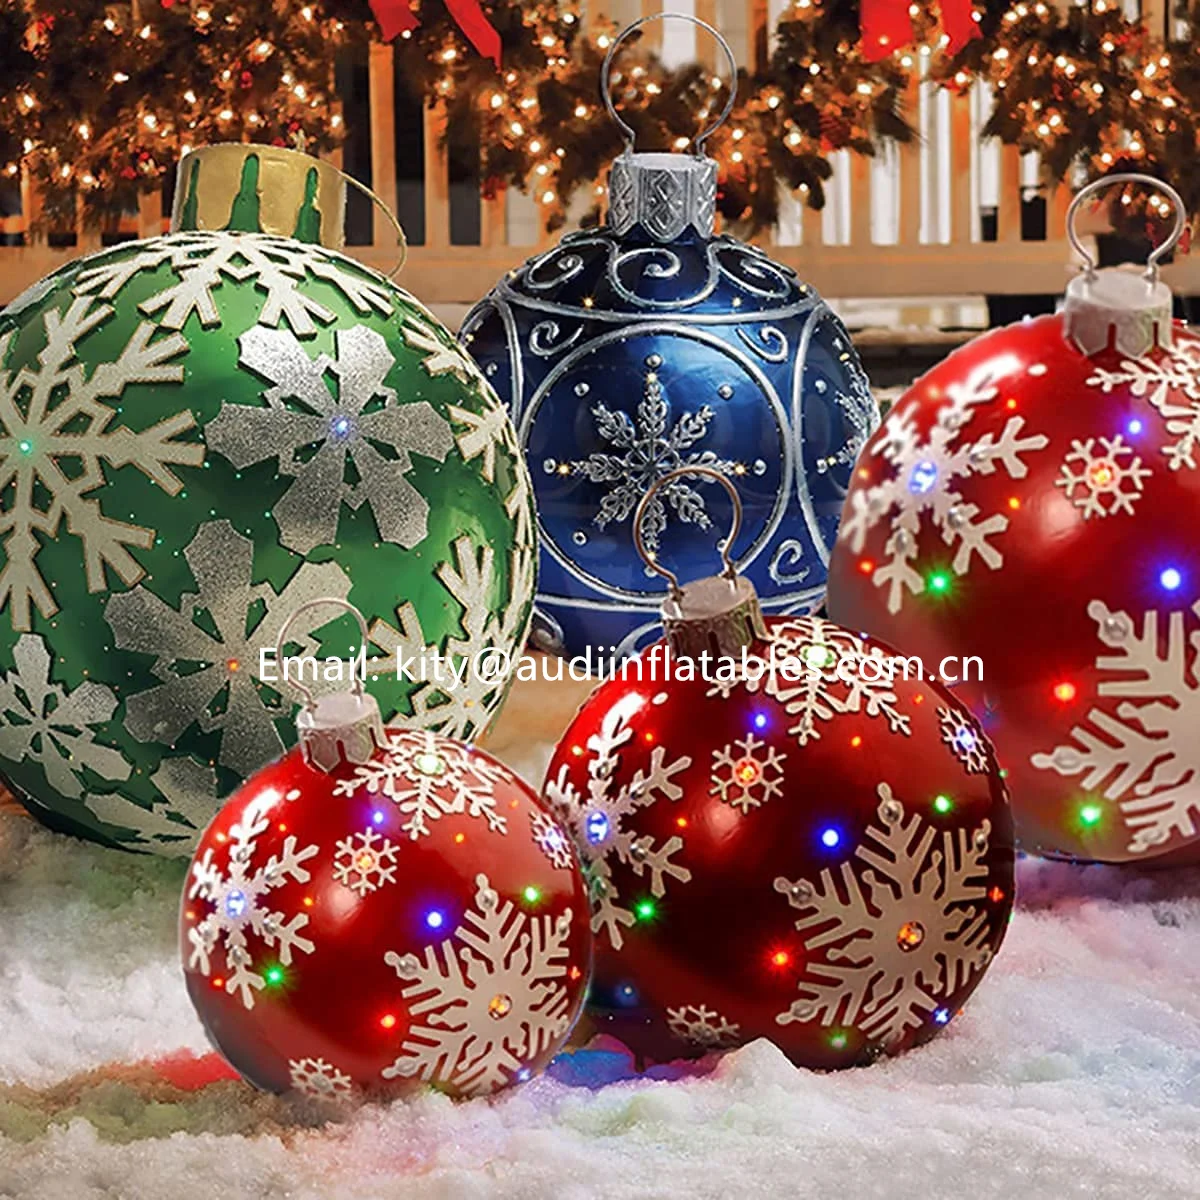 Bola inflable decorada de PVC de Navidad al aire libre Decoraciones para árboles de Navidad gigantes 23.6In Adornos navideños Bolas inflables de Navidad Decoración navideña 